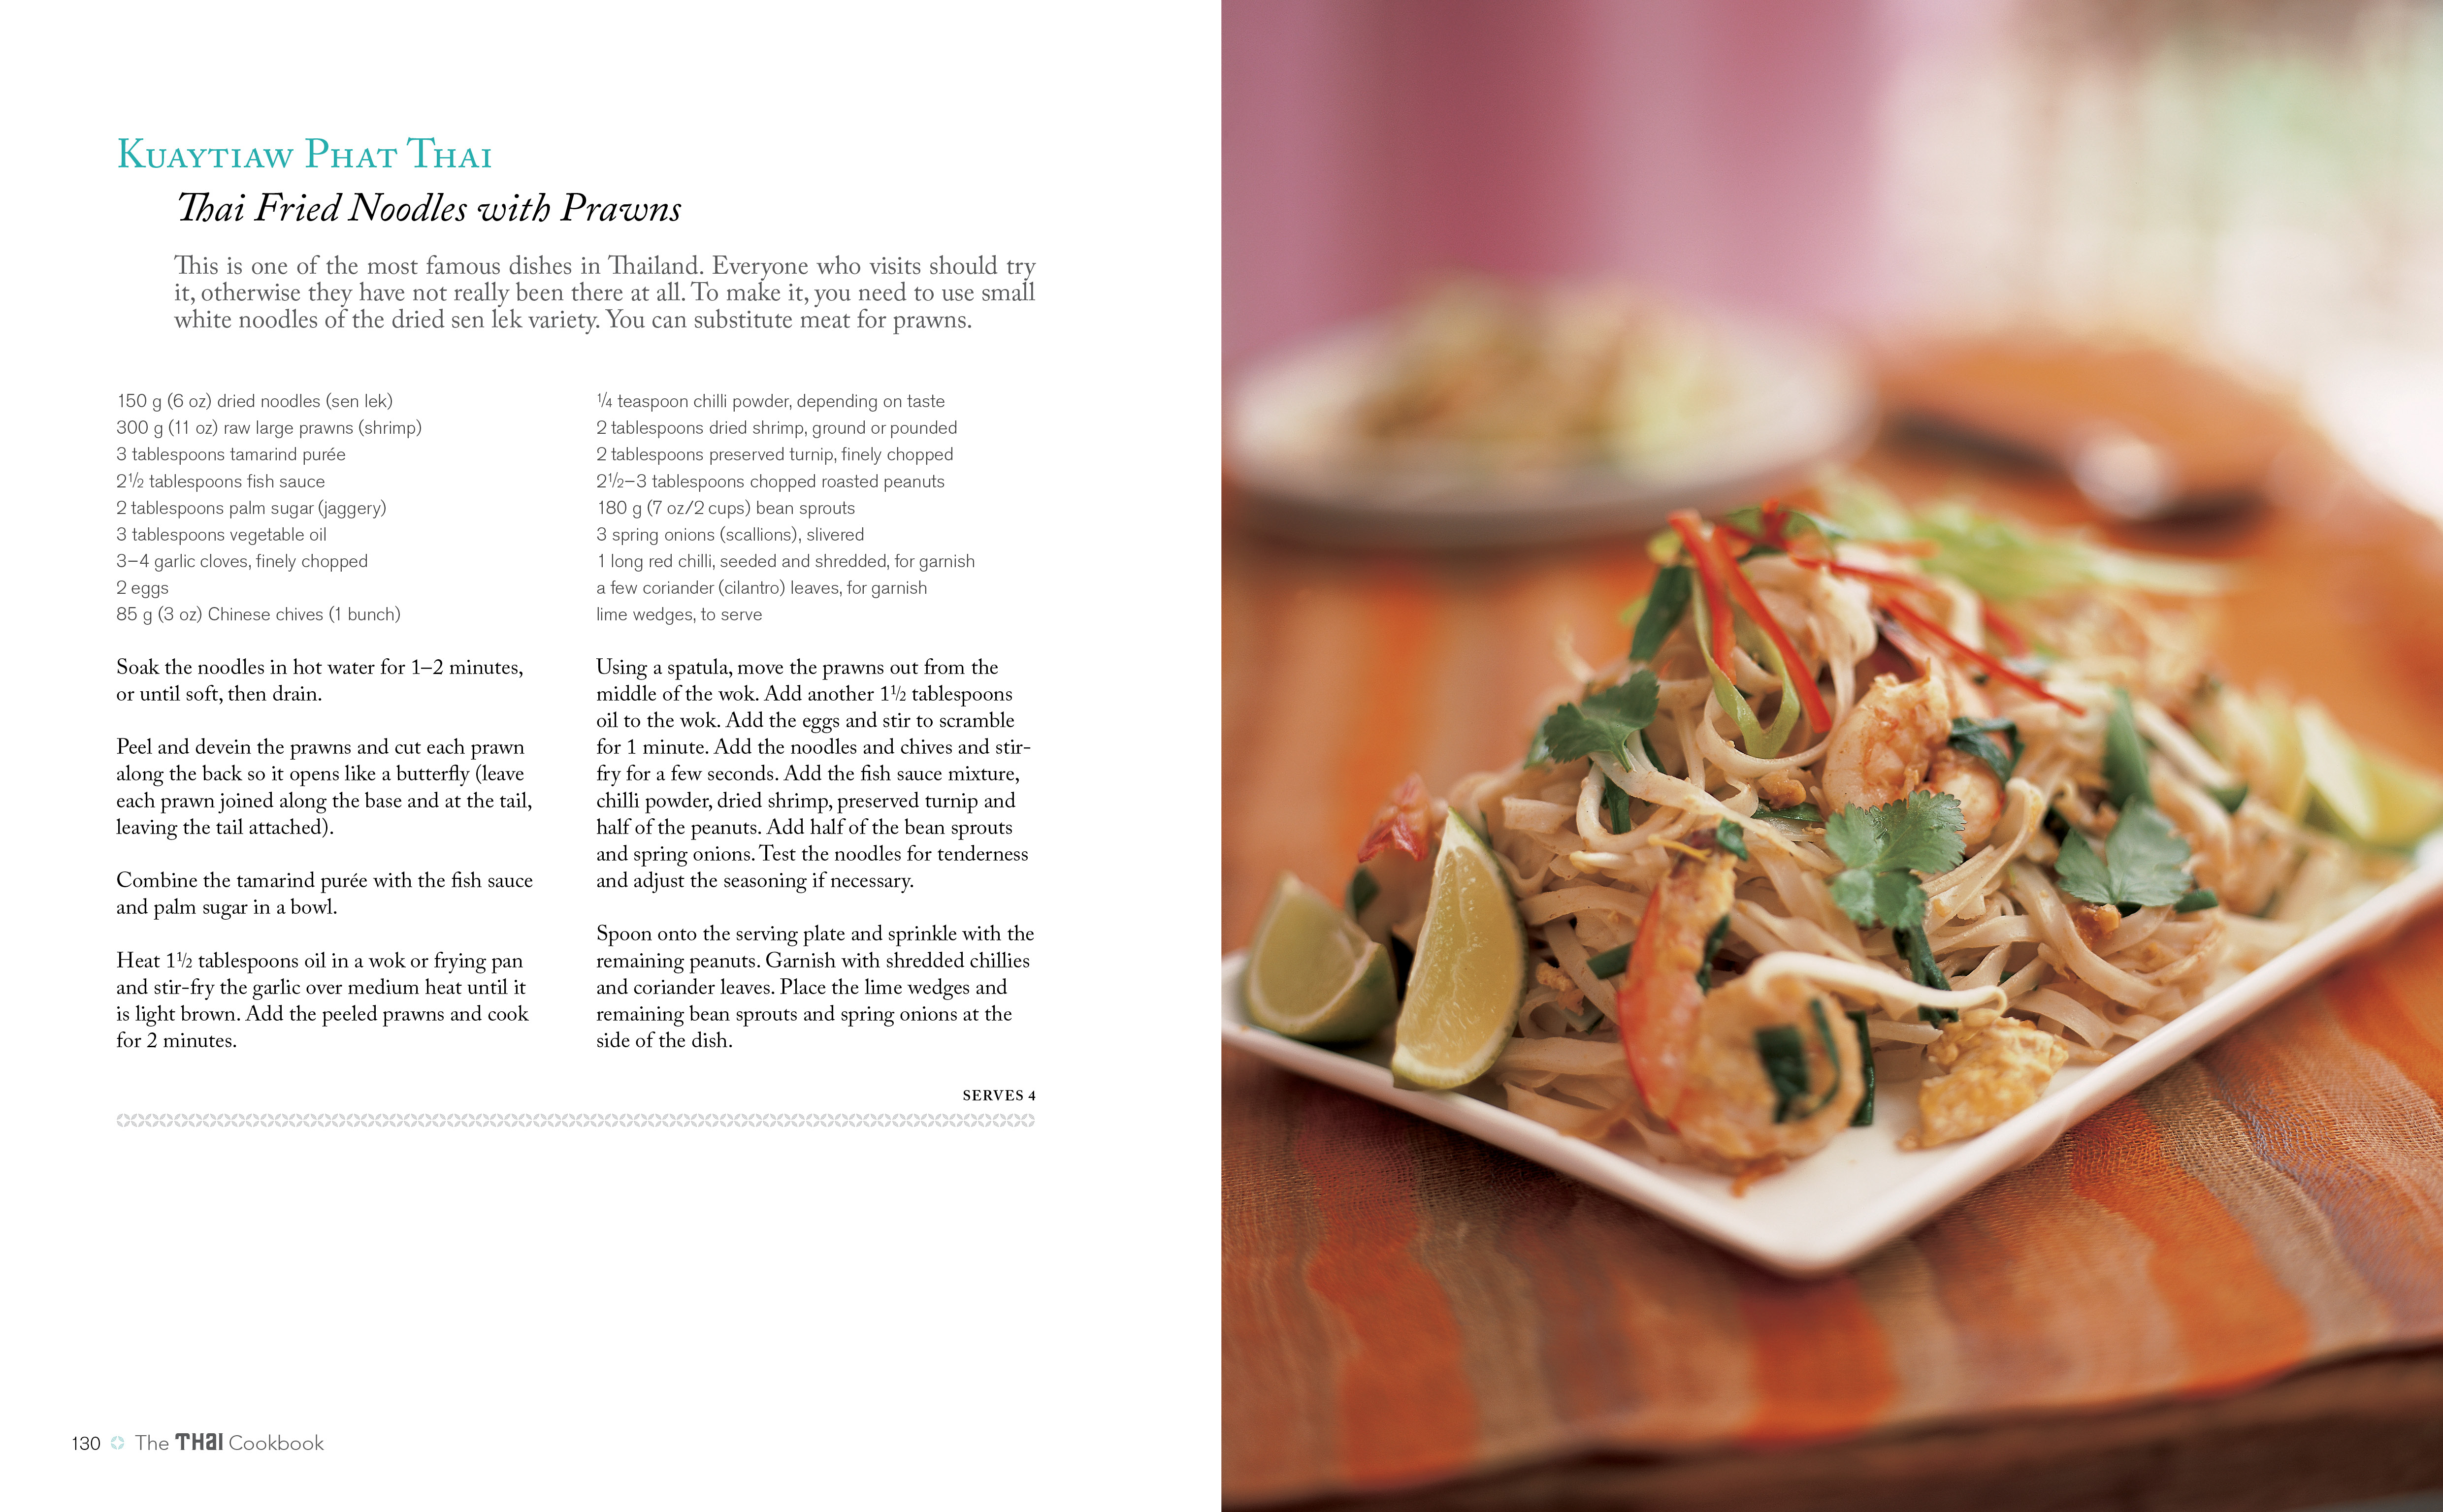 The Thai Cookbook